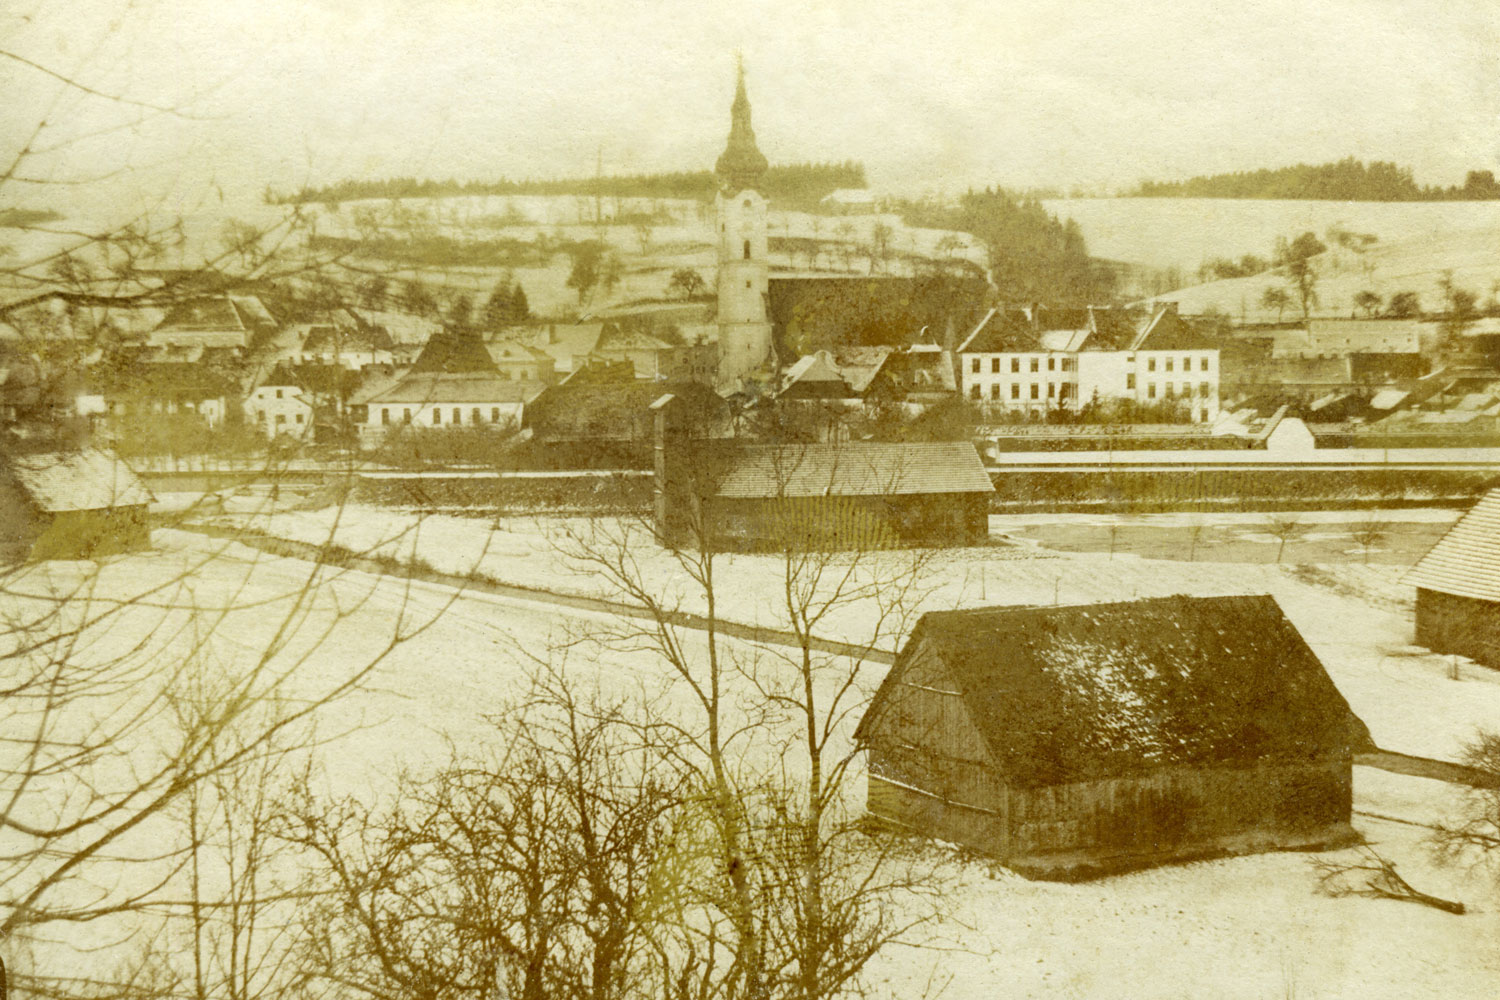 En face de la ville, prairies et champs et entre les deux, la rivière Trattnach souvent en crue : Grieskirchen au 19ème siècle.